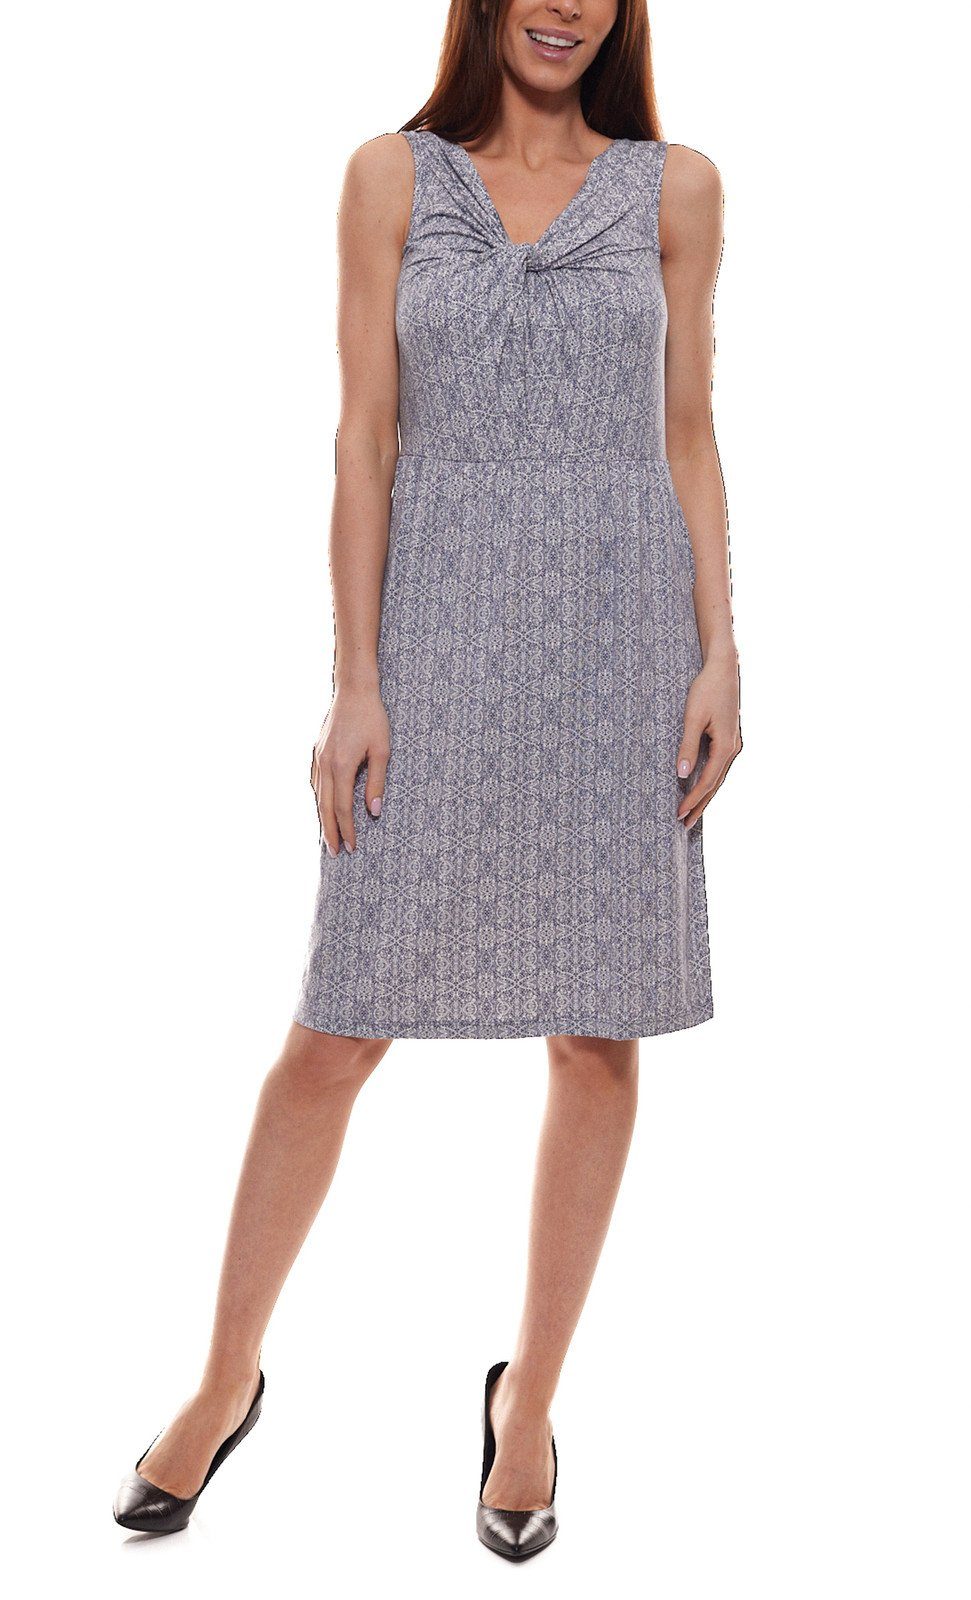 TOM TAILOR Sommerkleid »TOM TAILOR Jersey-Kleid schönes Damen Alltags-Kleid  Haus-Kleid mit raffiniertem Knoten-Detail am Ausschnitt Blau« online kaufen  | OTTO